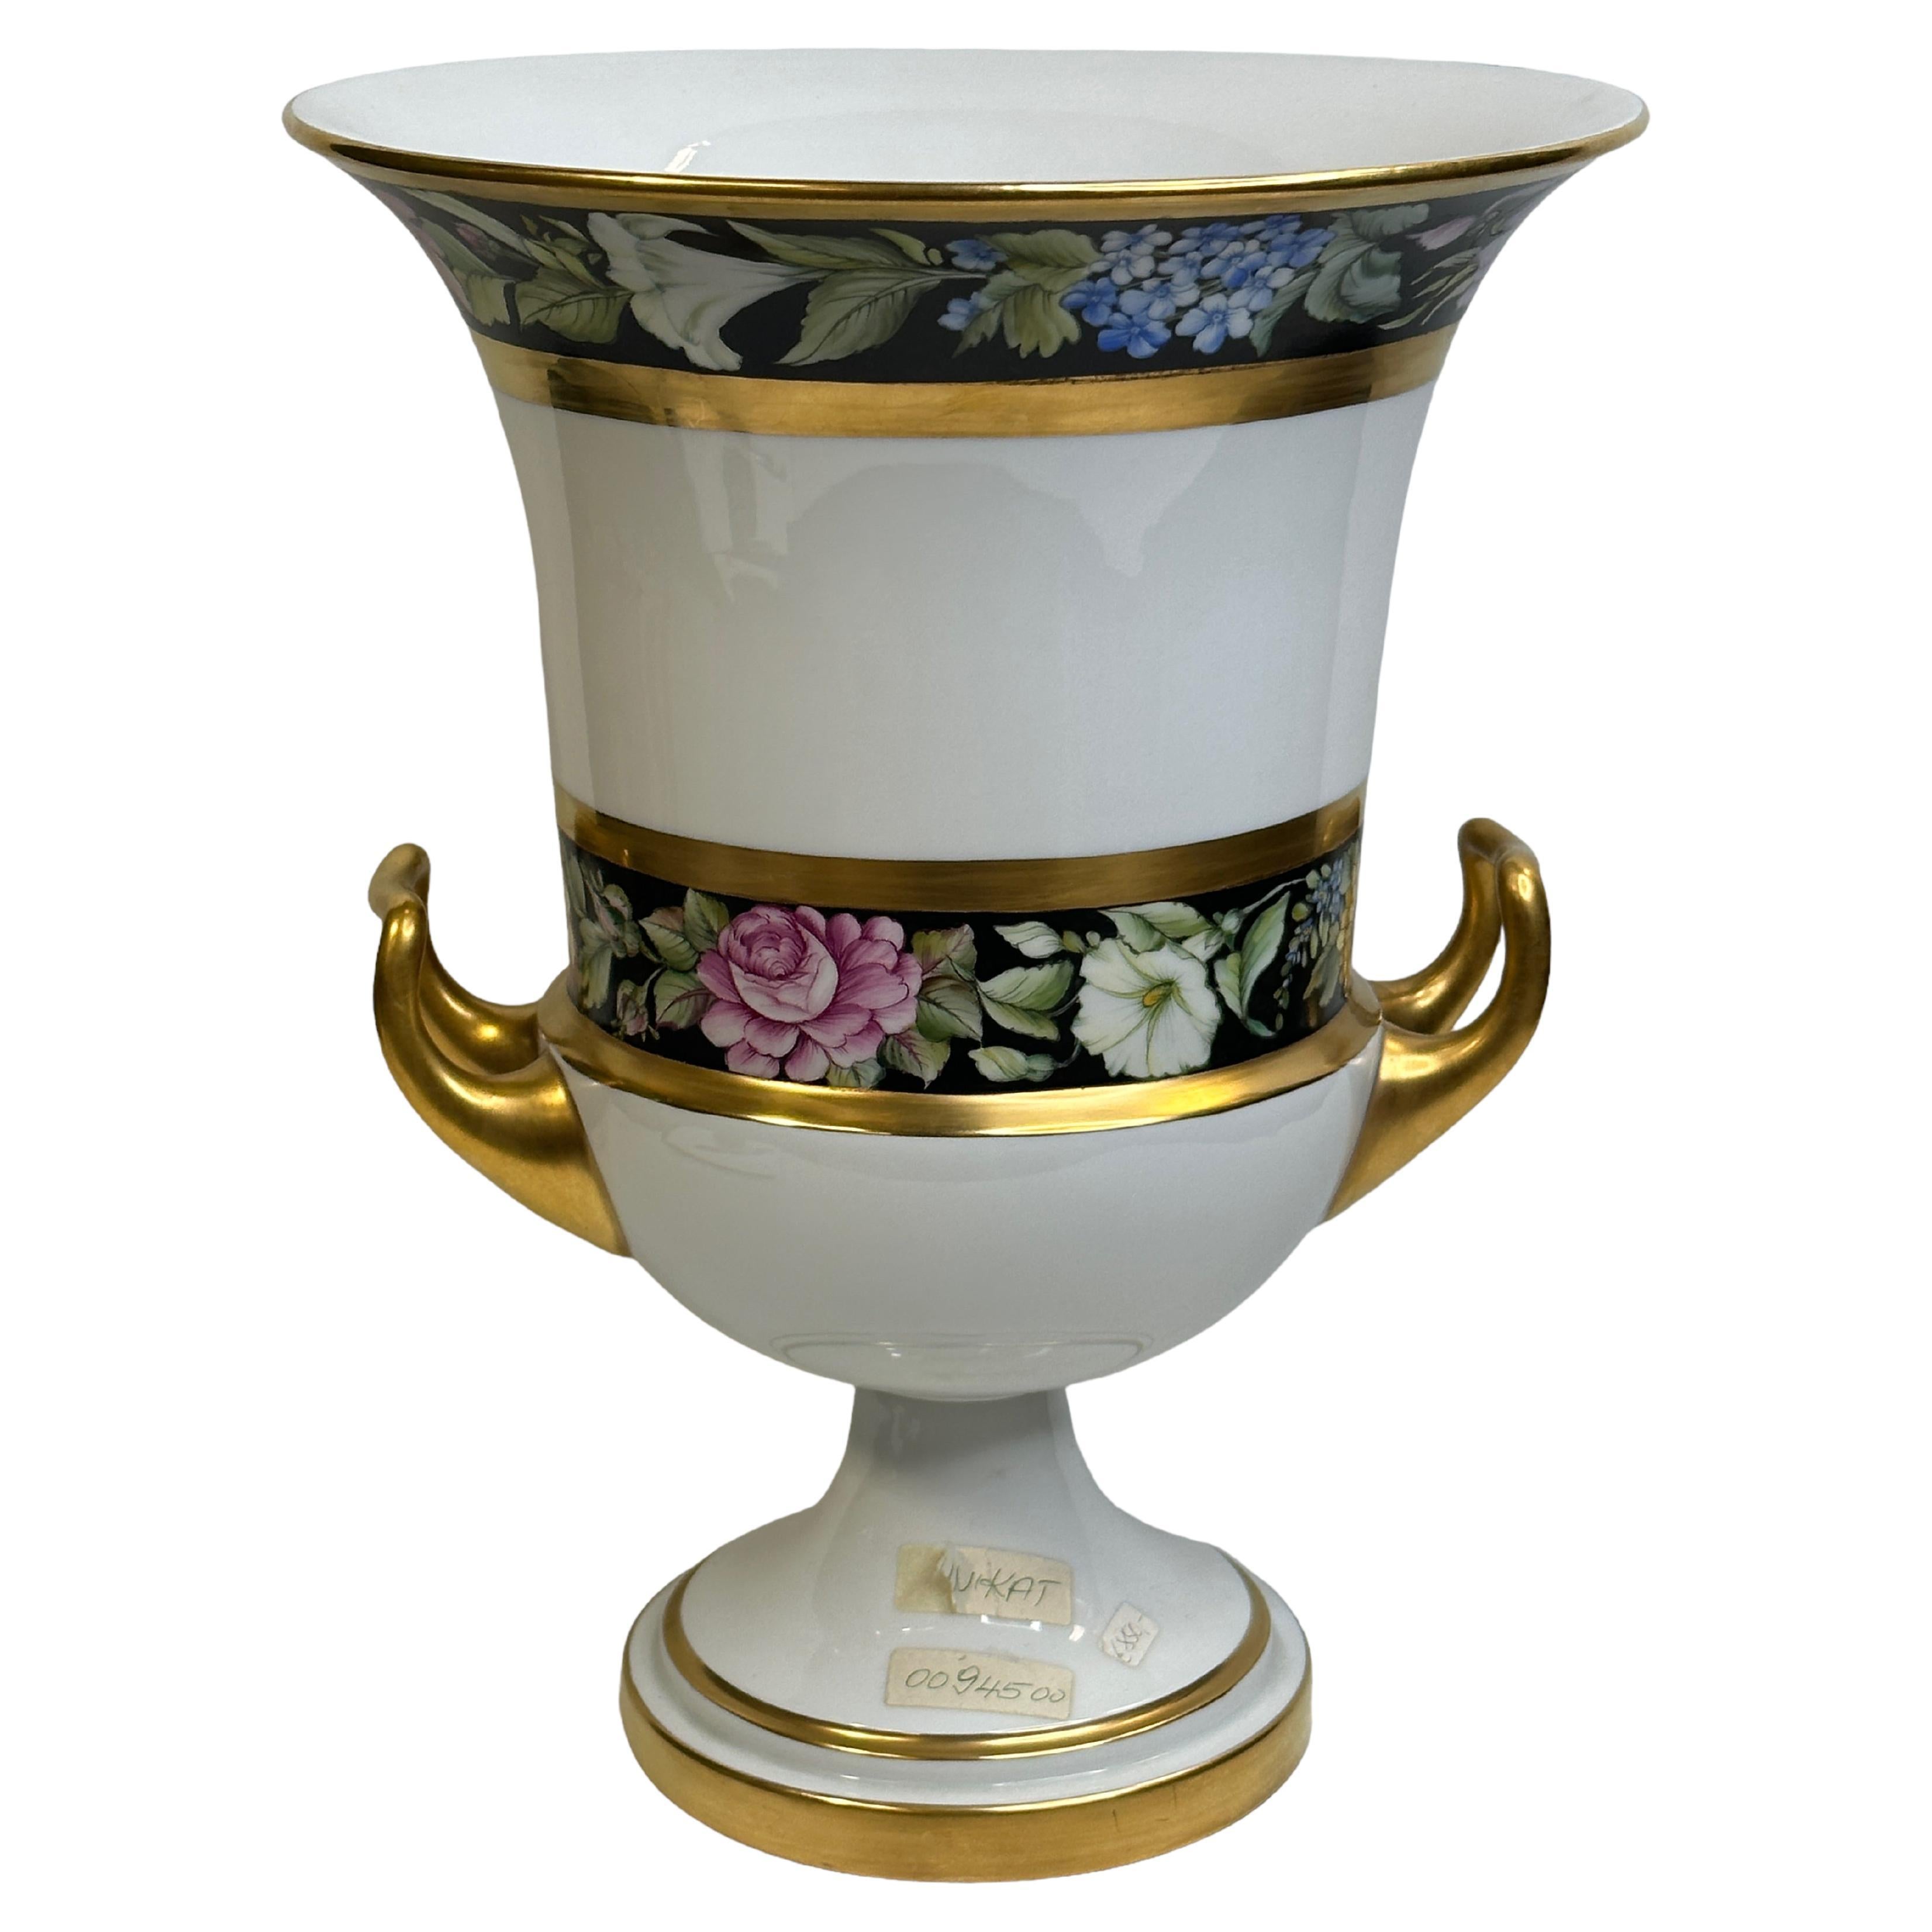 Exceptional Fürstenberg Pedestal Medici form Twin Handled Urn Vase Unique Sample For Sale